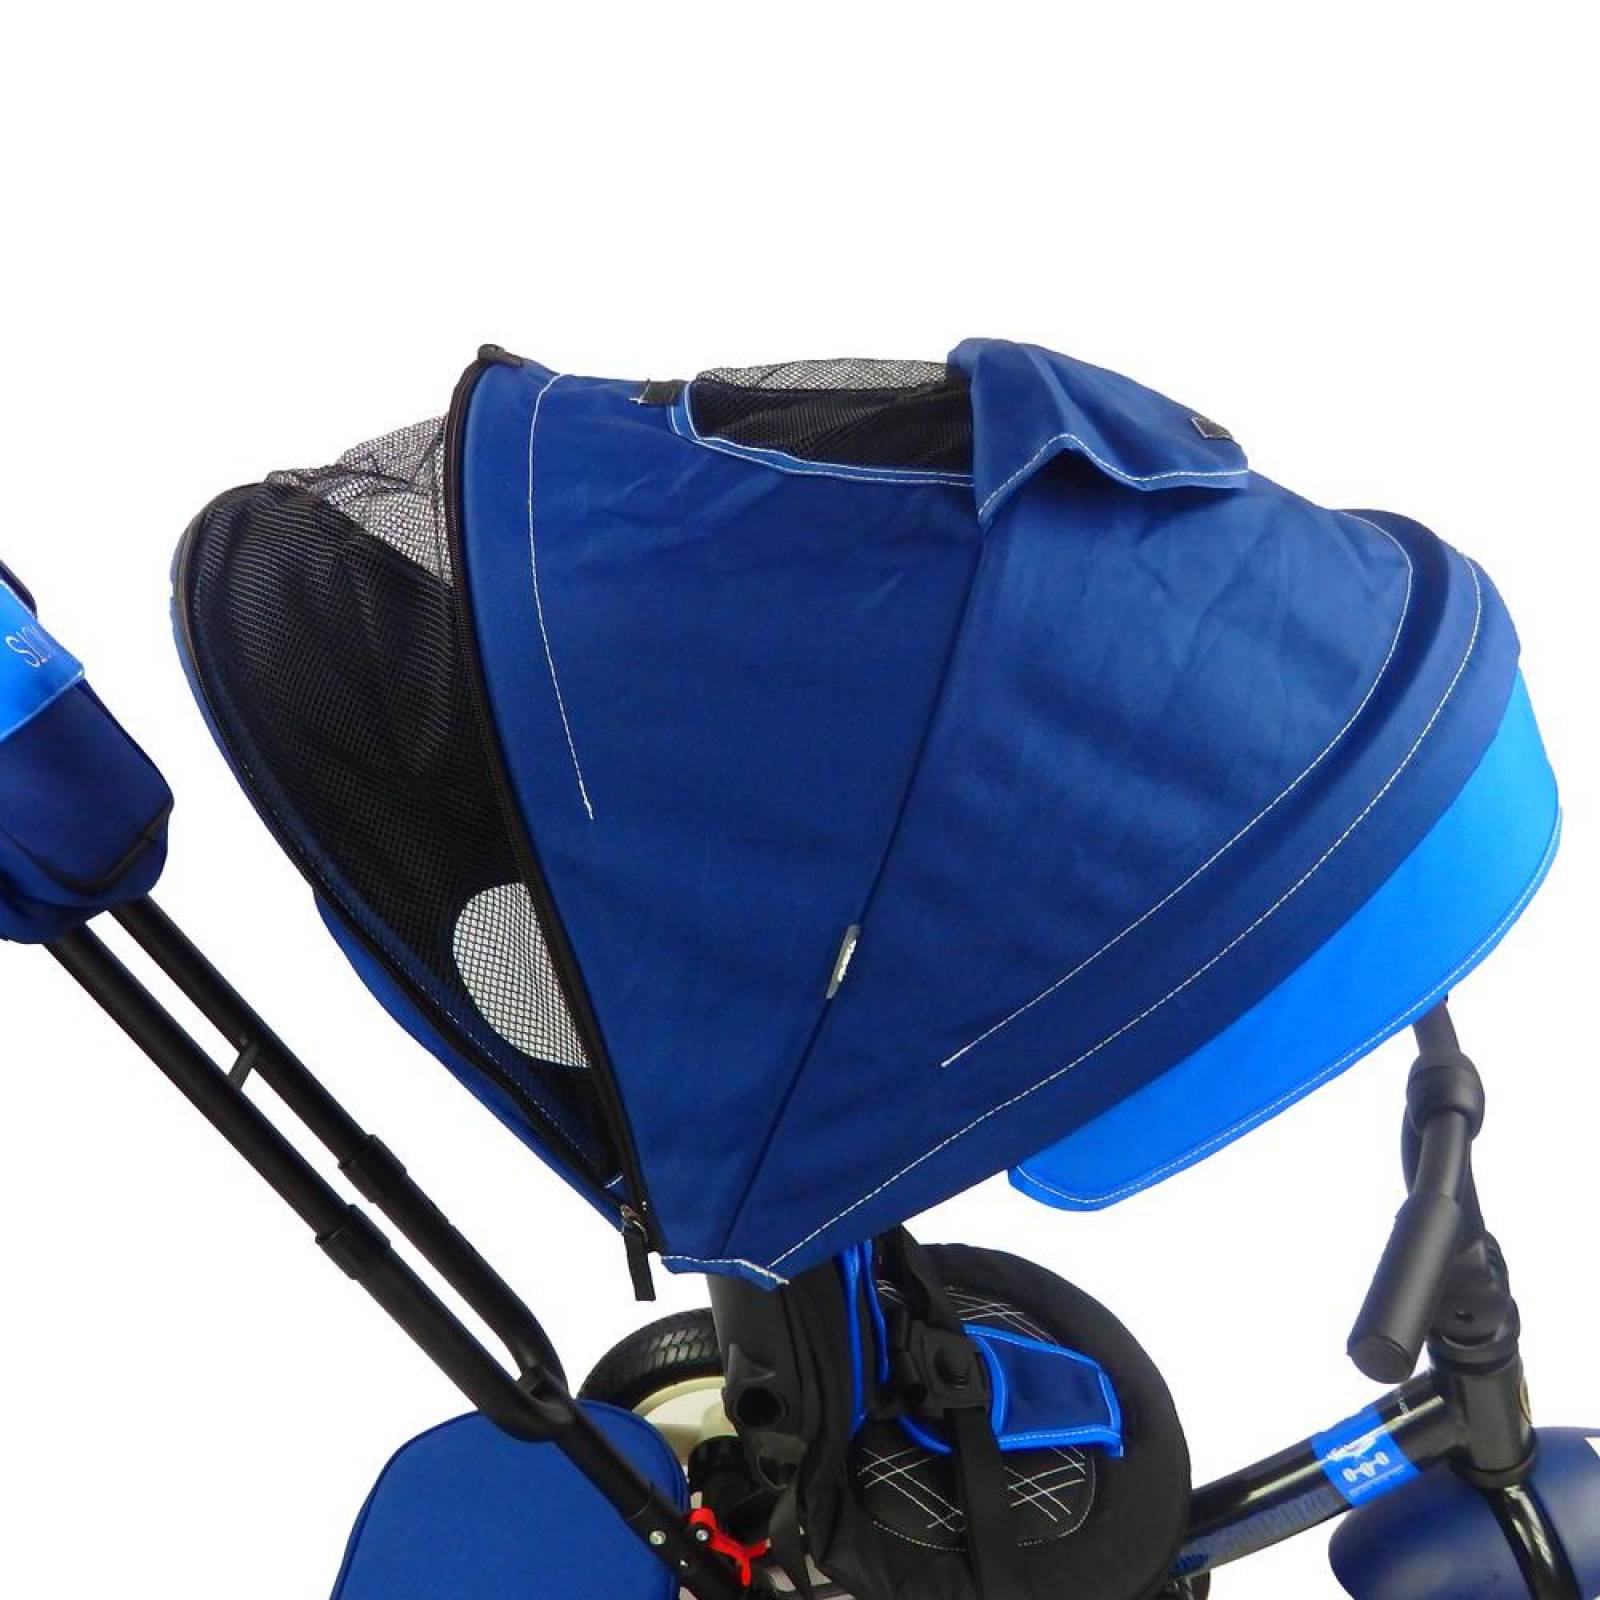 Triciclo para Bebe de lujo Llantas de Aire 360 Evolutivo 6-5 años Azul 